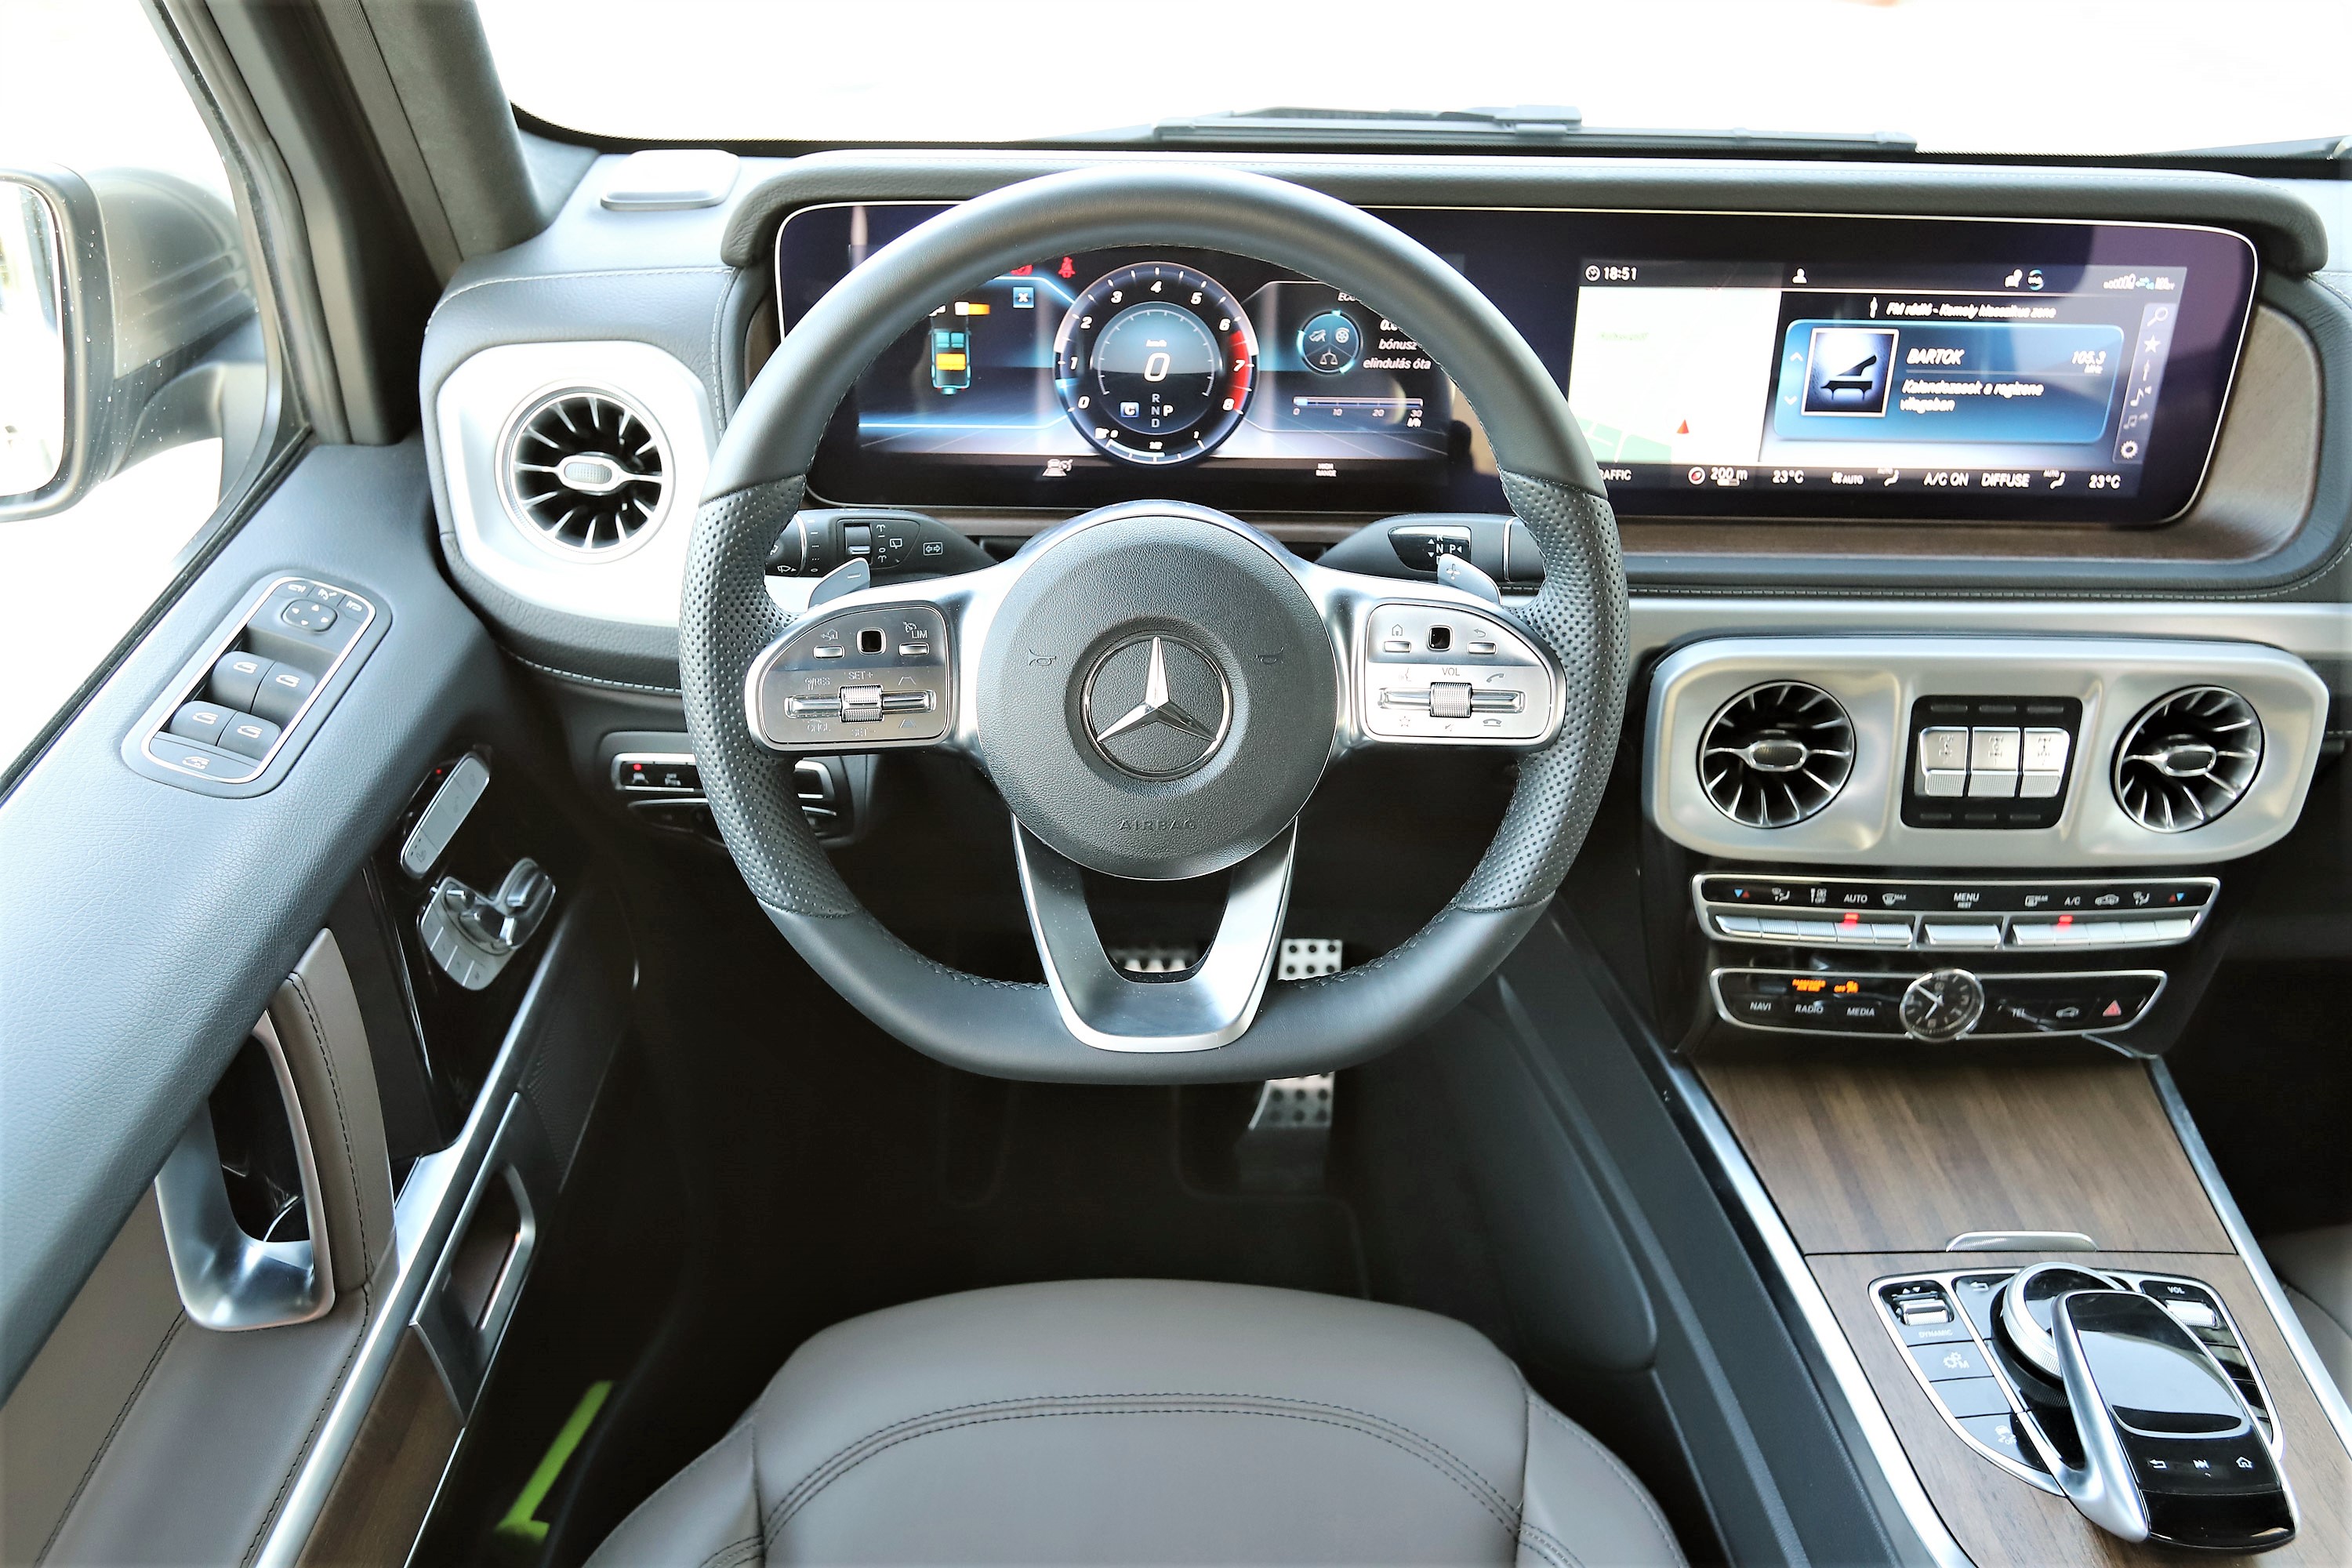 Ugyanaz, de mégis nagyon más – Mercedes G500 2019 teszt 28